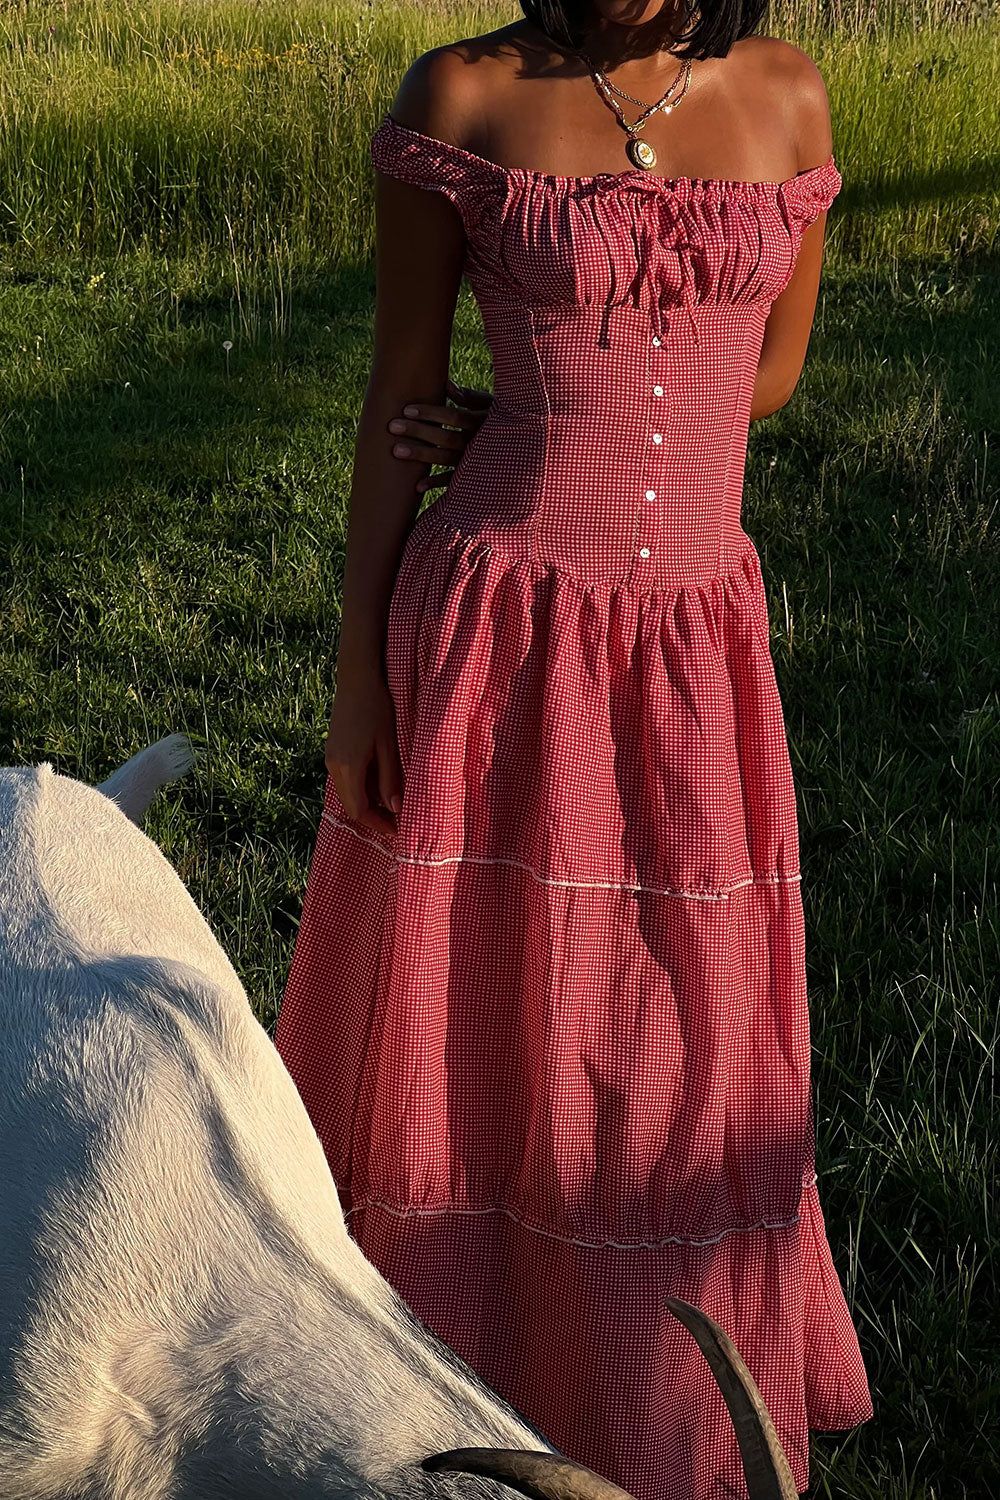 Christabelle Ruffle Maxi Dress - Ladybug Gingham